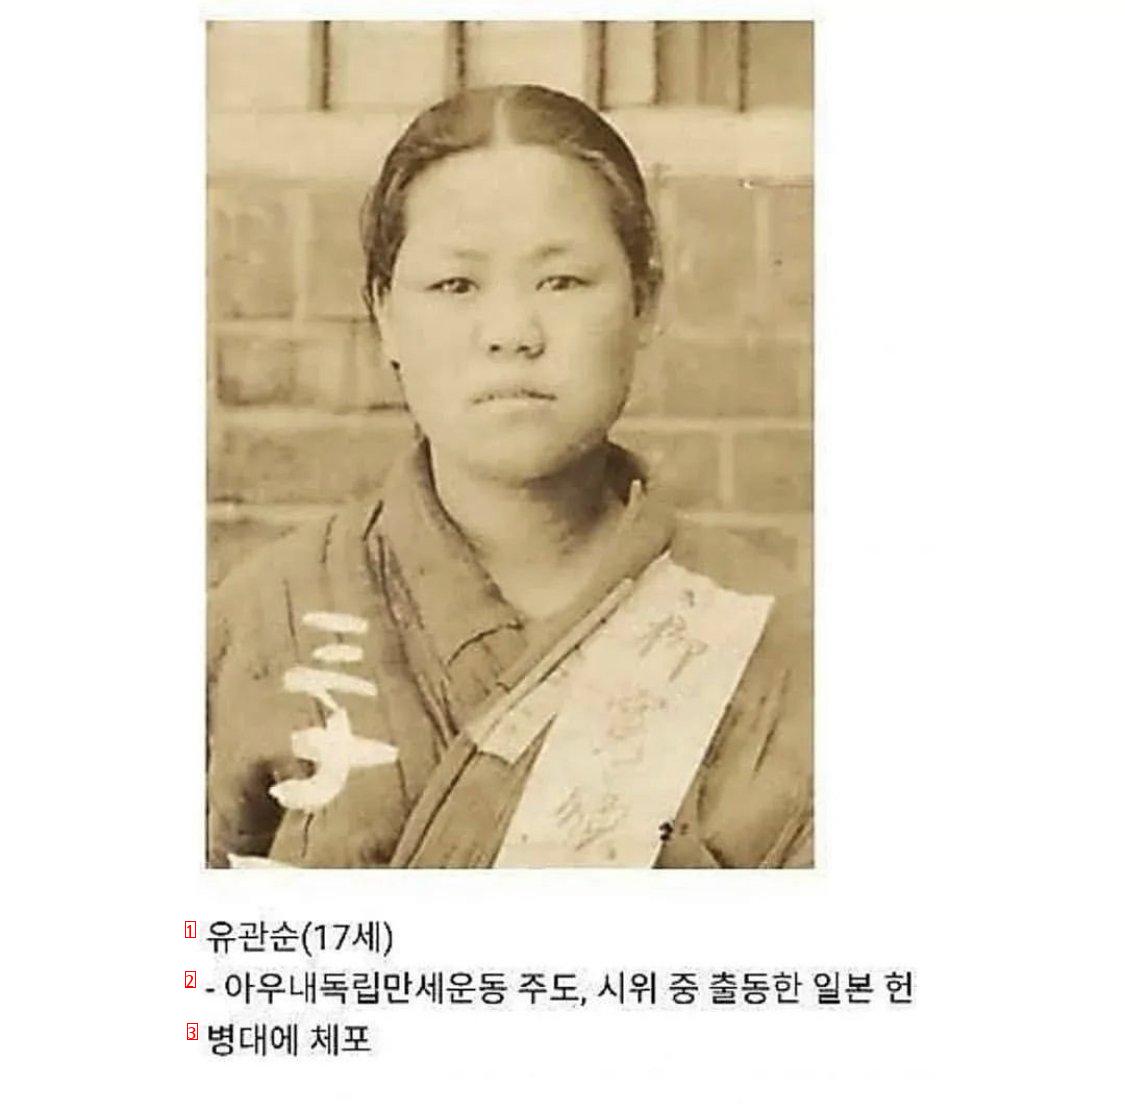 대한민국 체포된 10대들